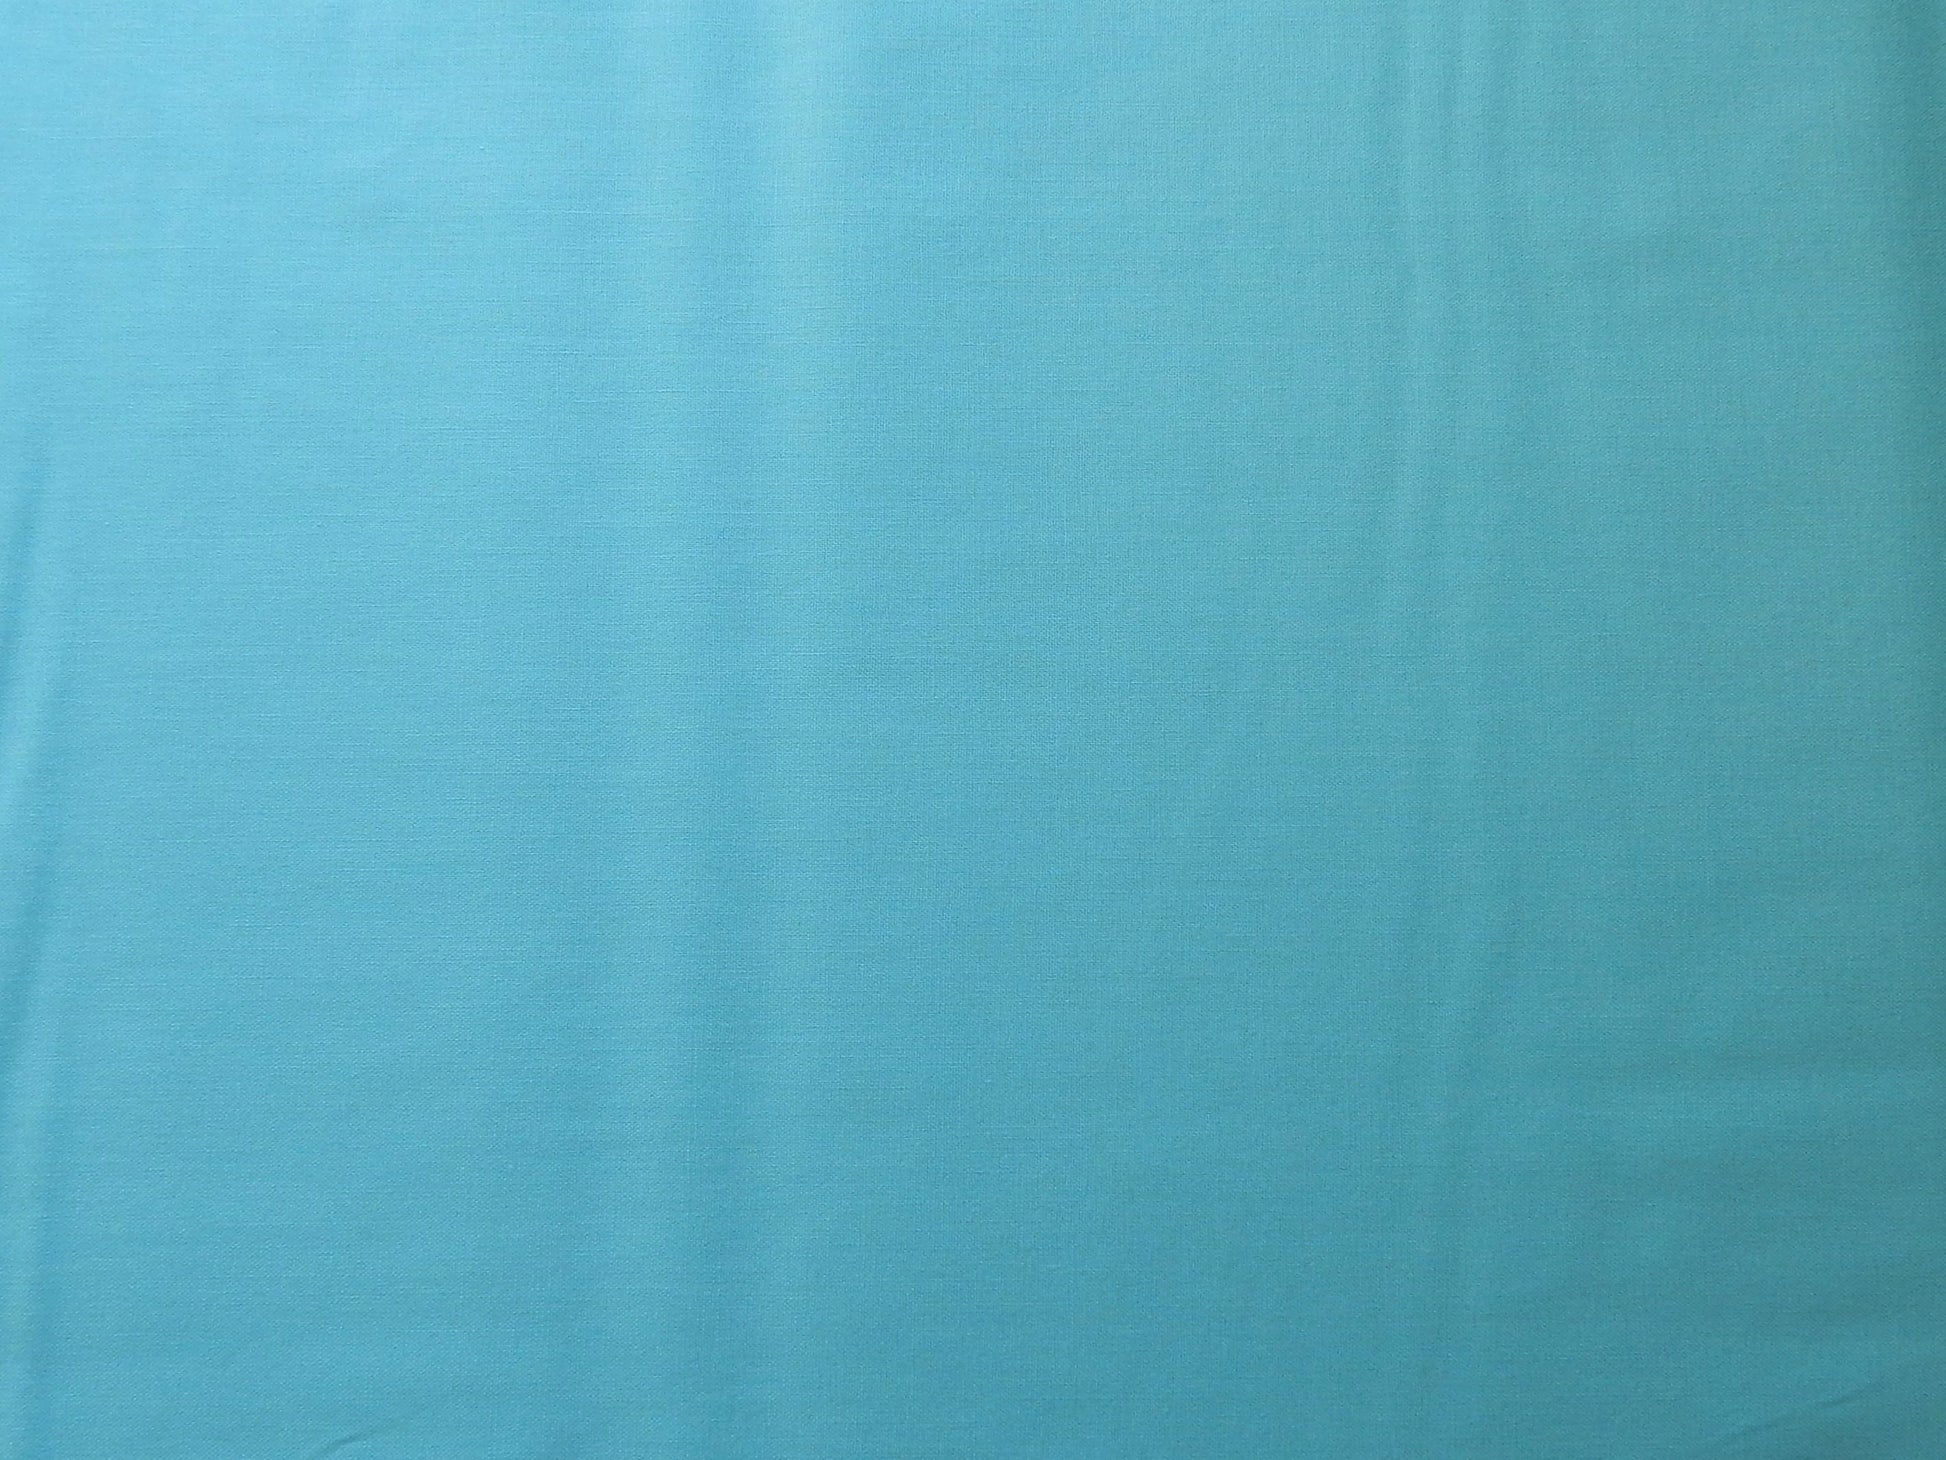 paintbrush studios aruba turquoise quilting fabric